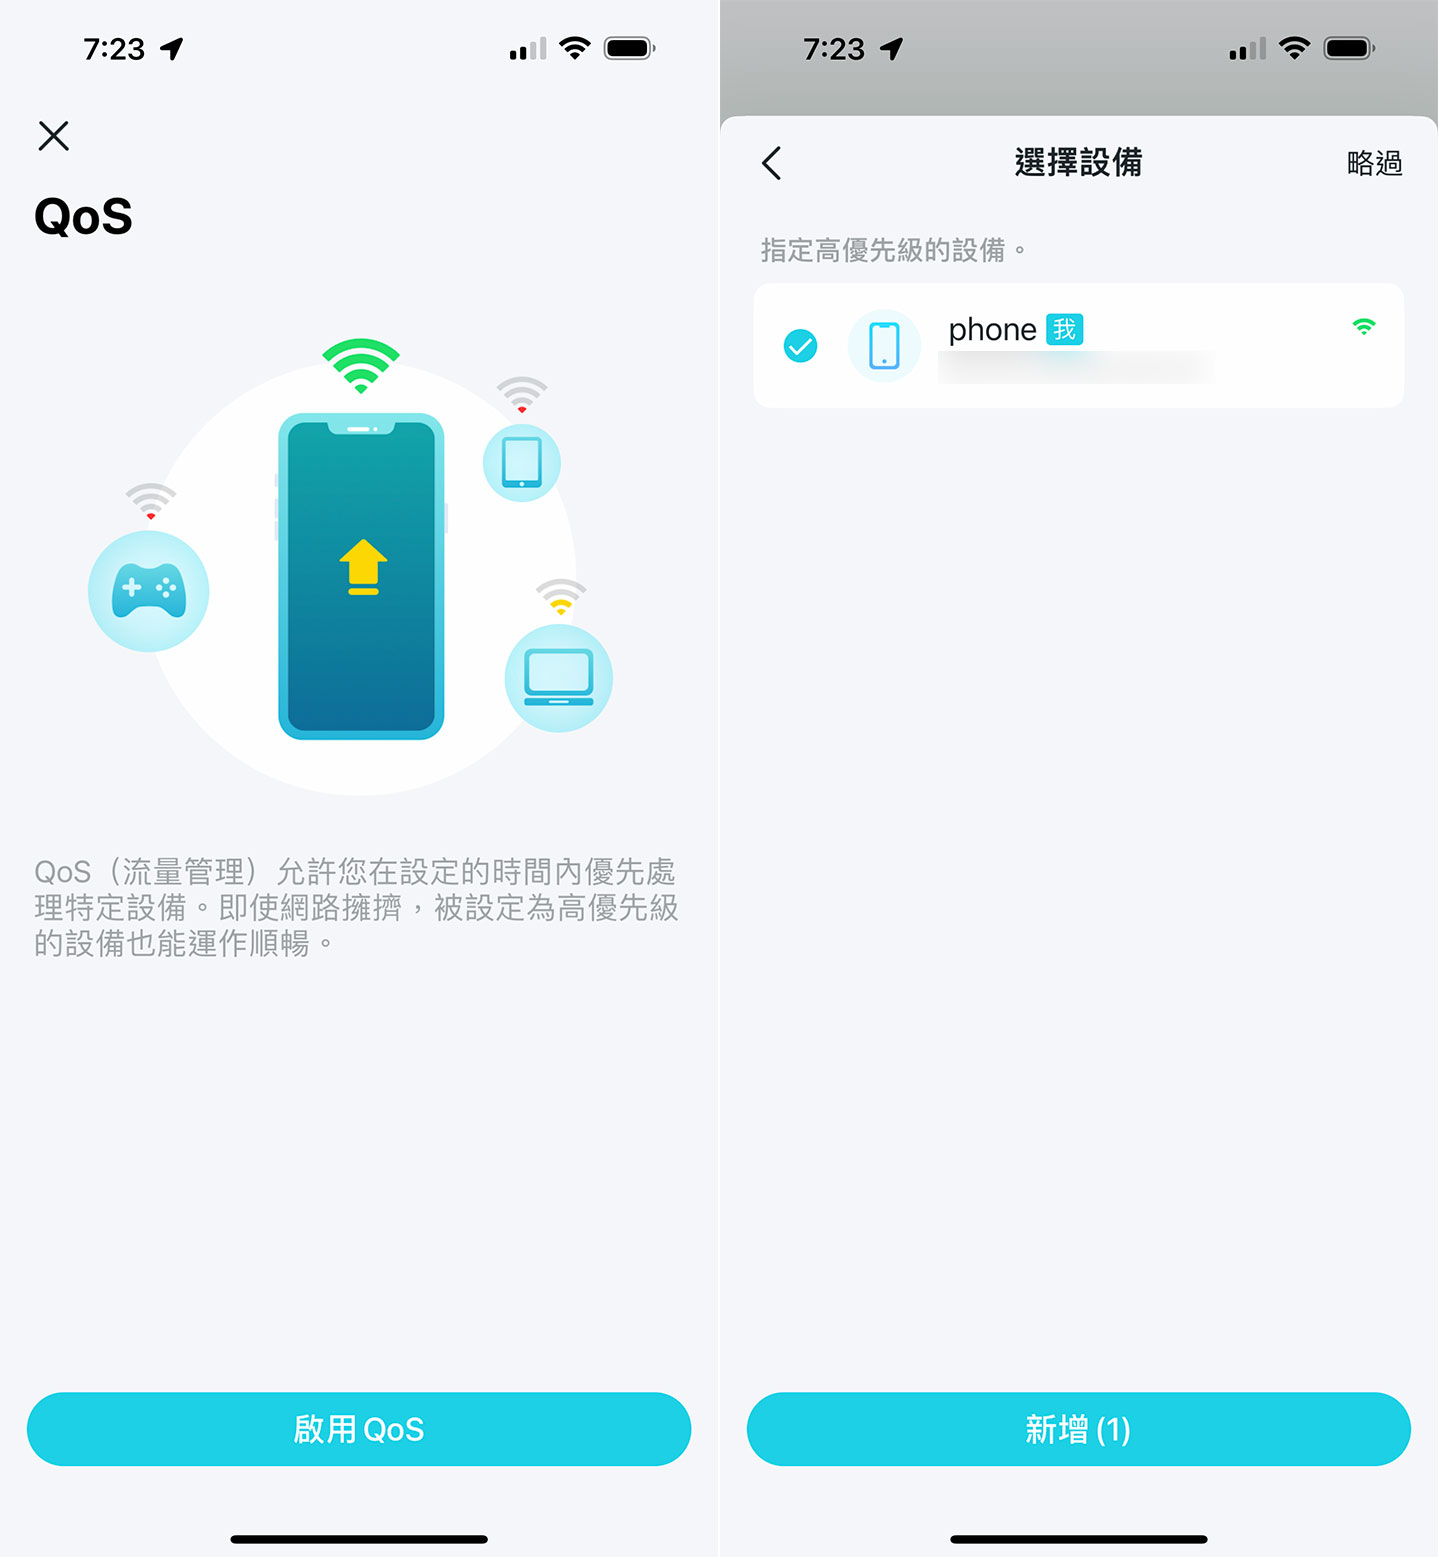 透過 Deco App 可以開啟 QoS 功能，將指定備加入高優先權，以確保網路連結使用能保持順暢。